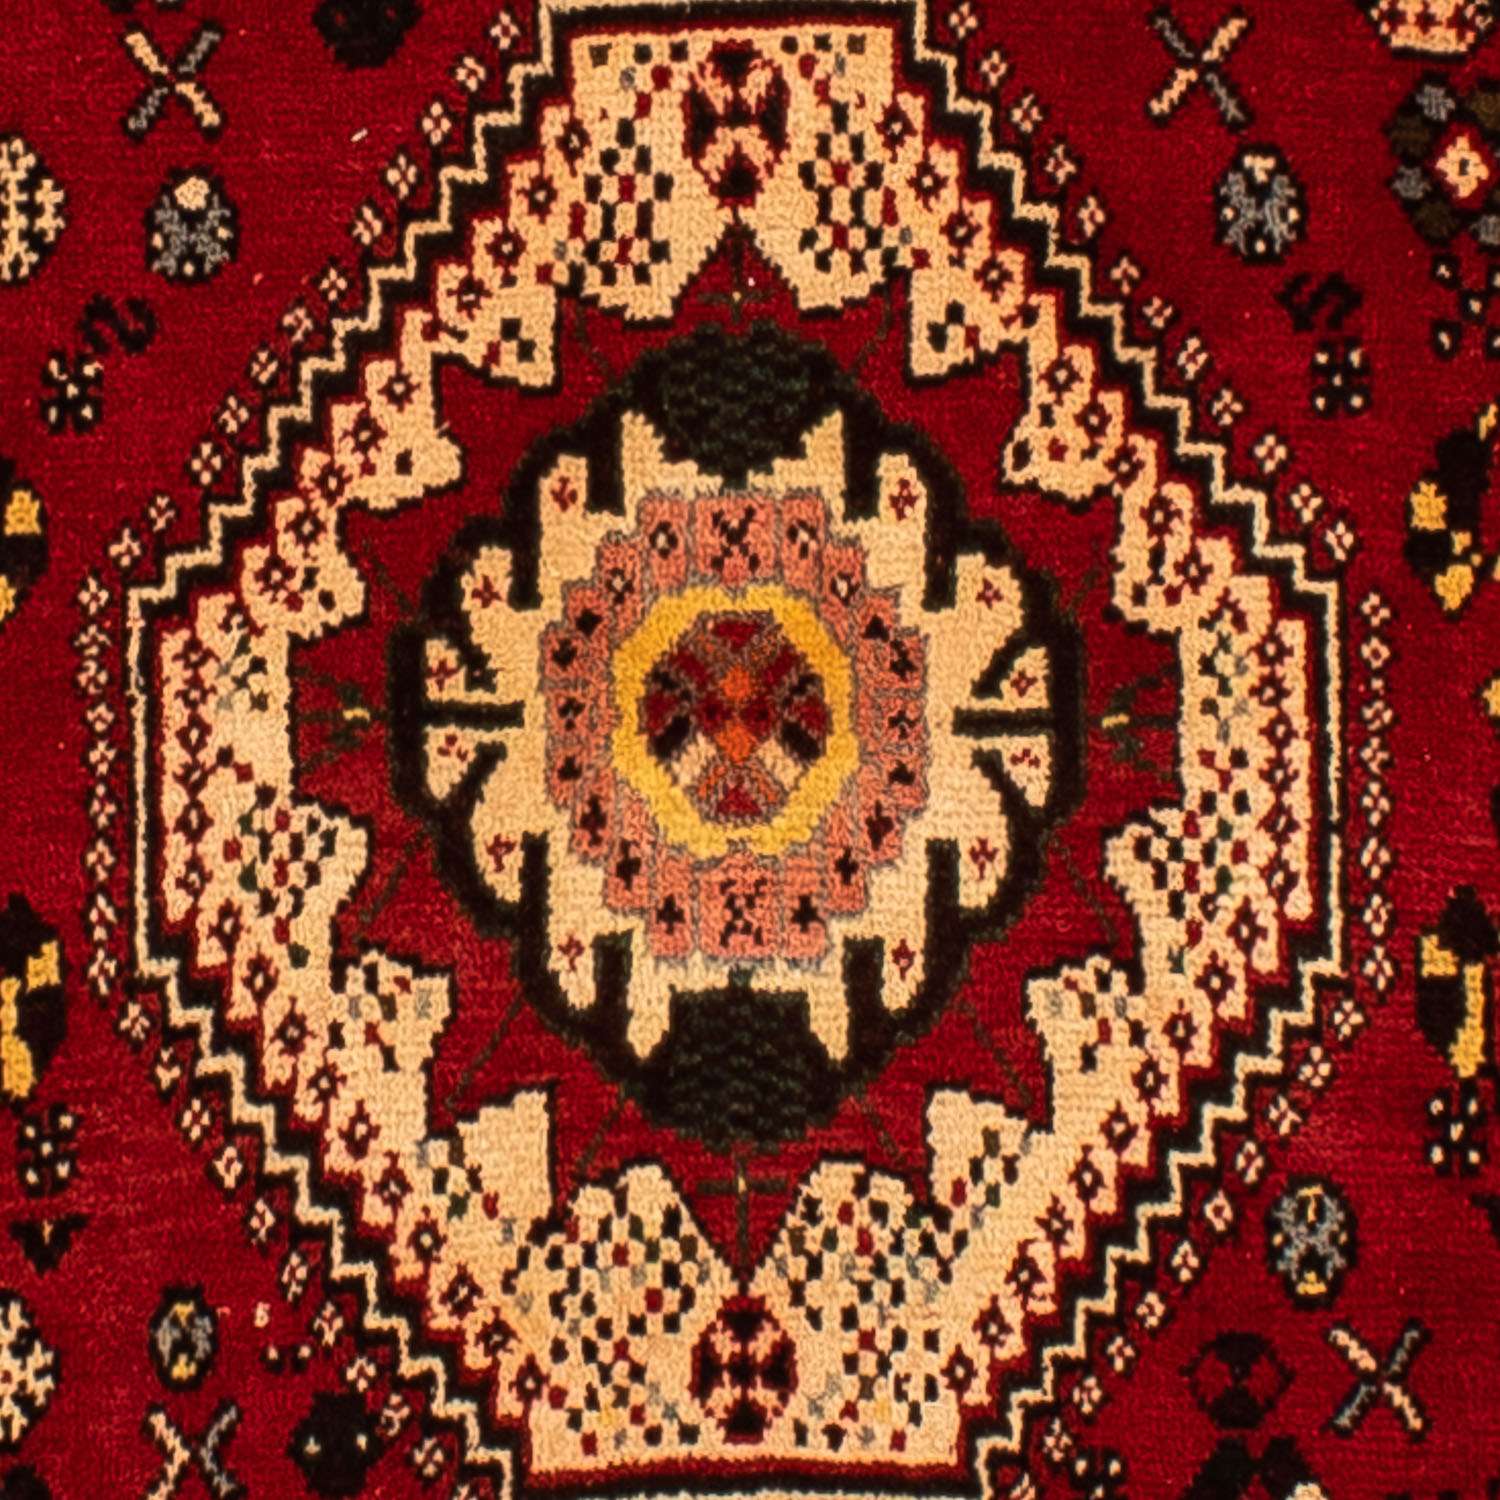 Alfombra persa - Nómada - 295 x 210 cm - rojo oscuro